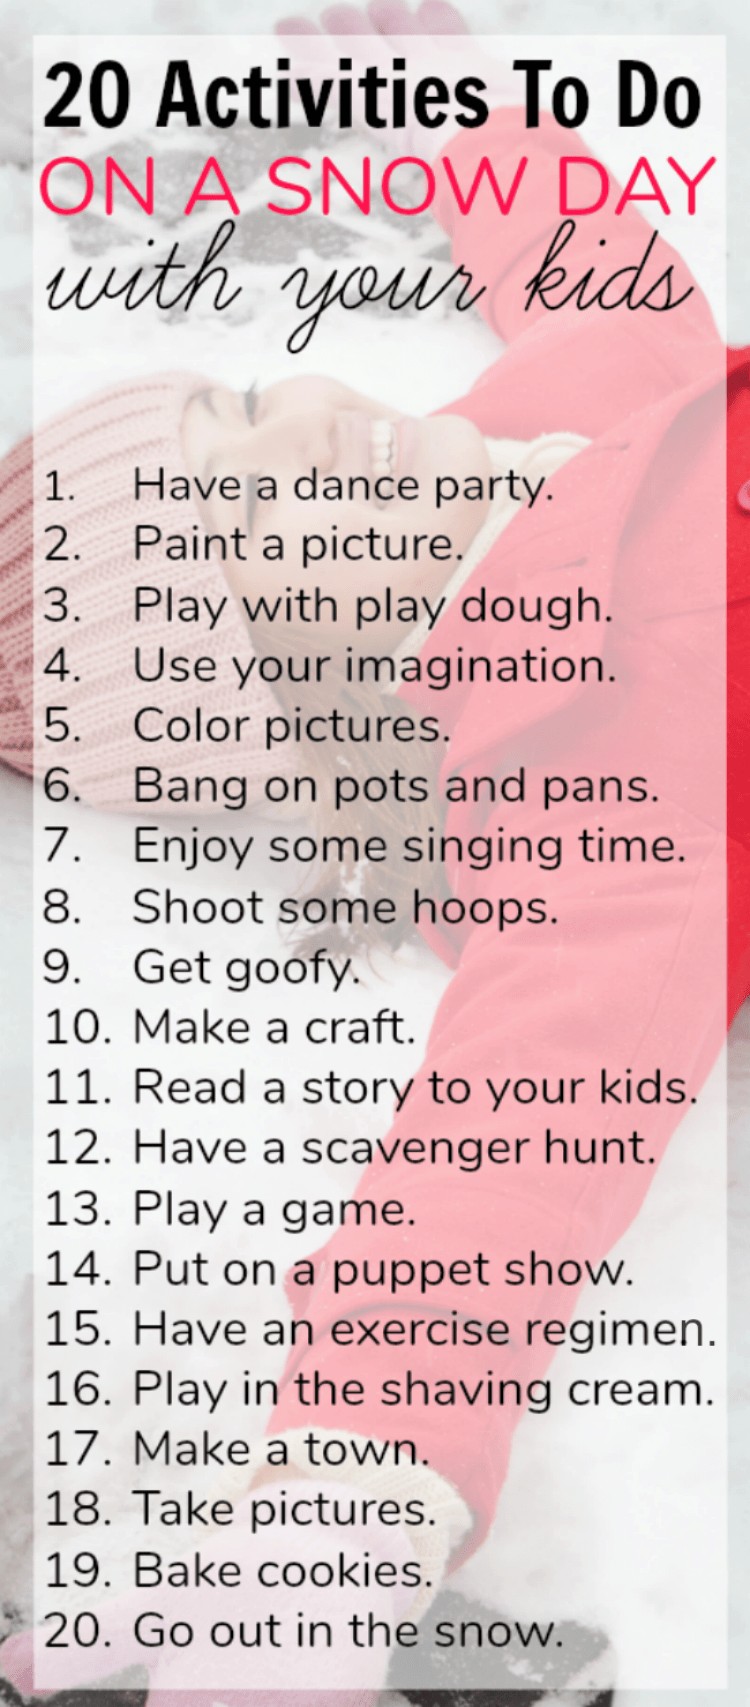 20 actividades divertidas para hacer con los niños en un día de nieve bajo techo